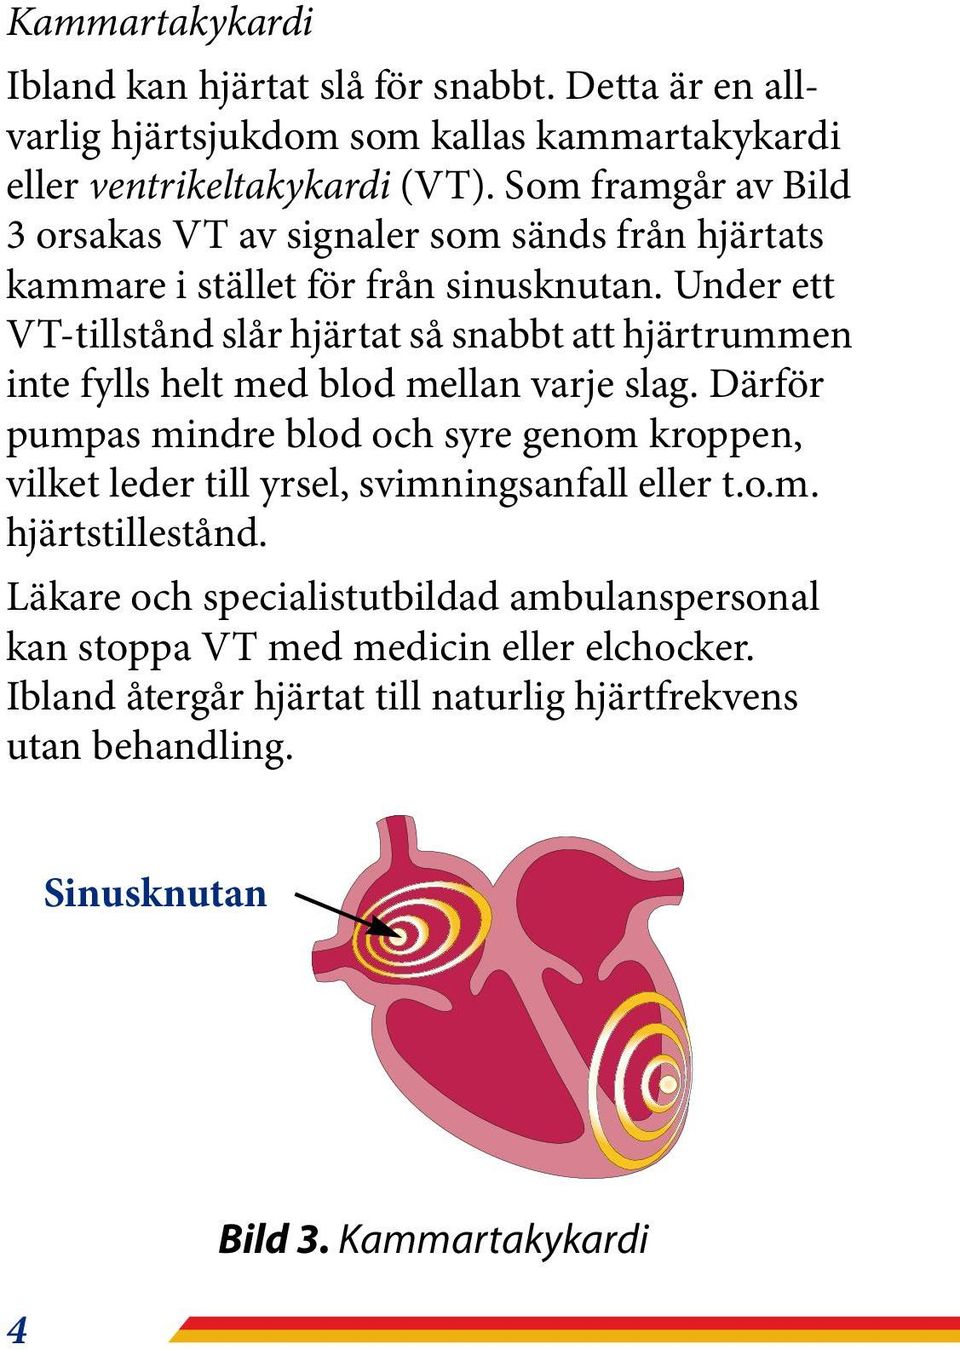 Under ett VT-tillstånd slår hjärtat så snabbt att hjärtrummen inte fylls helt med blod mellan varje slag.